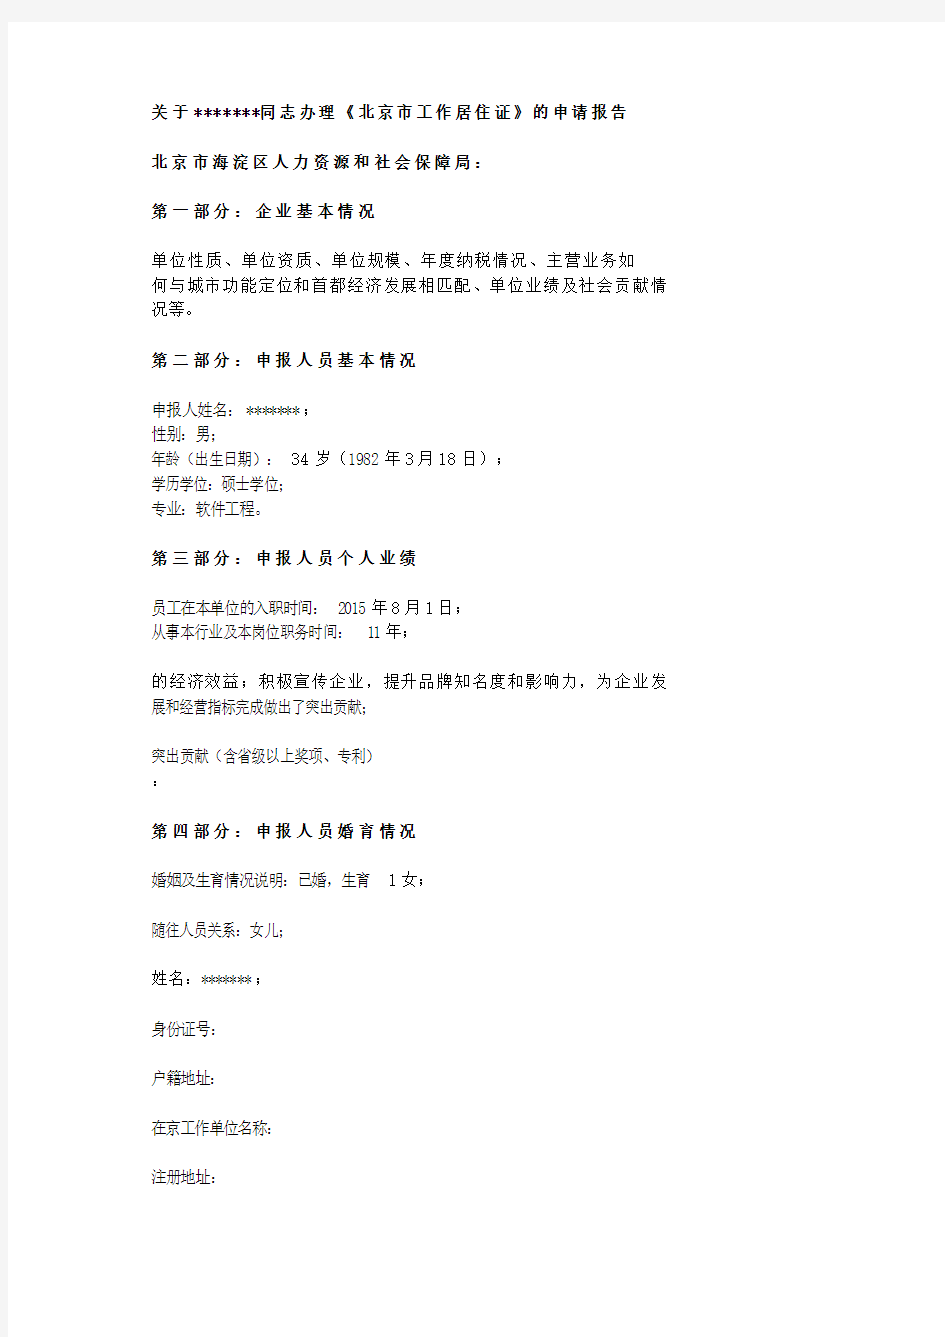 关于XXX同志办理《北京市工作居住证》的申请报告